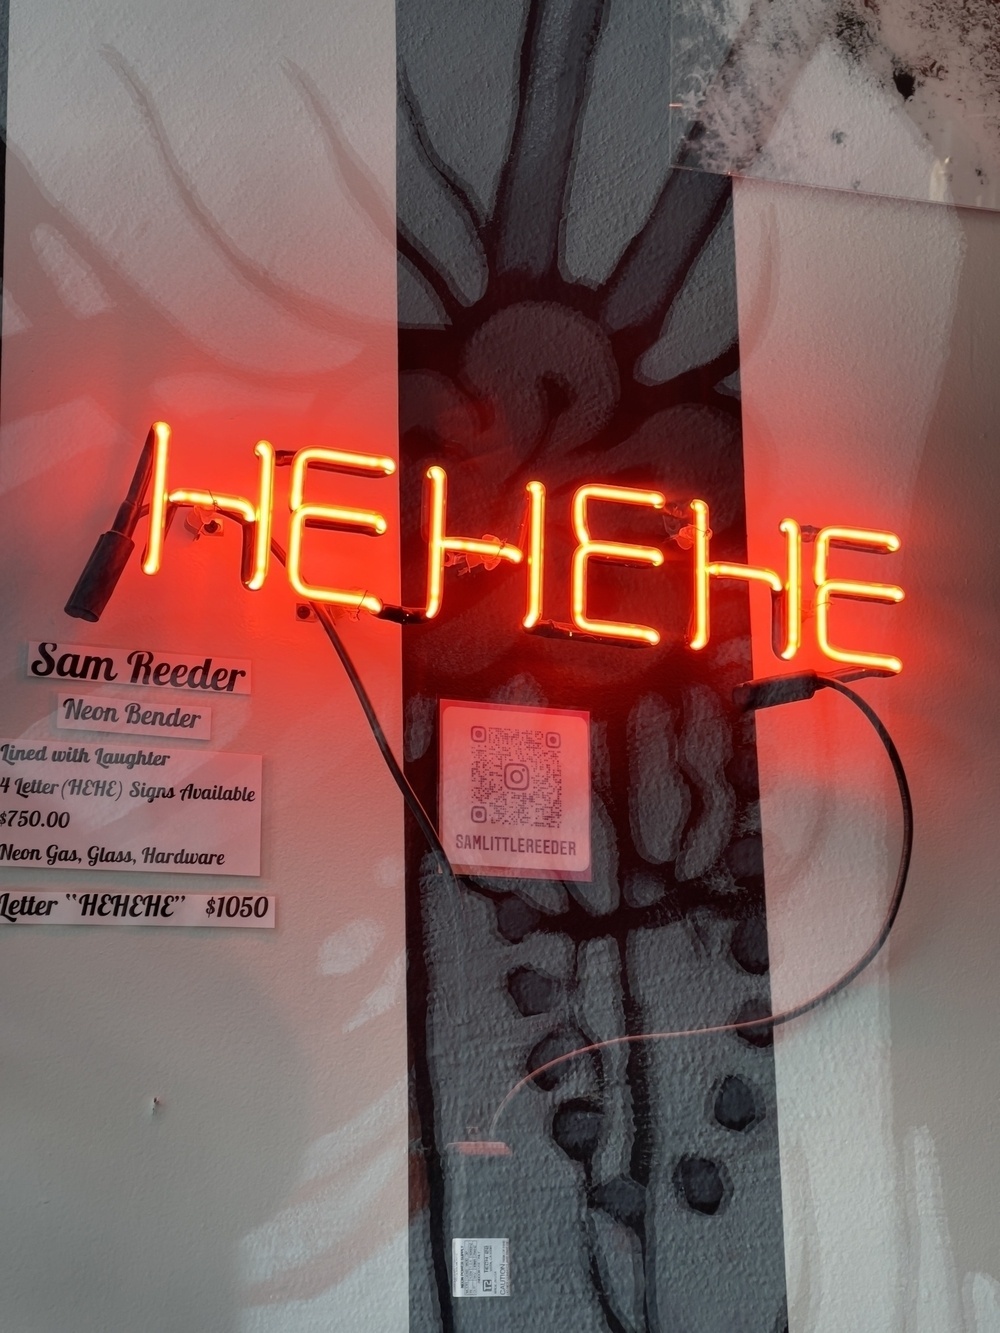 Neon sign saying HEHEHE.